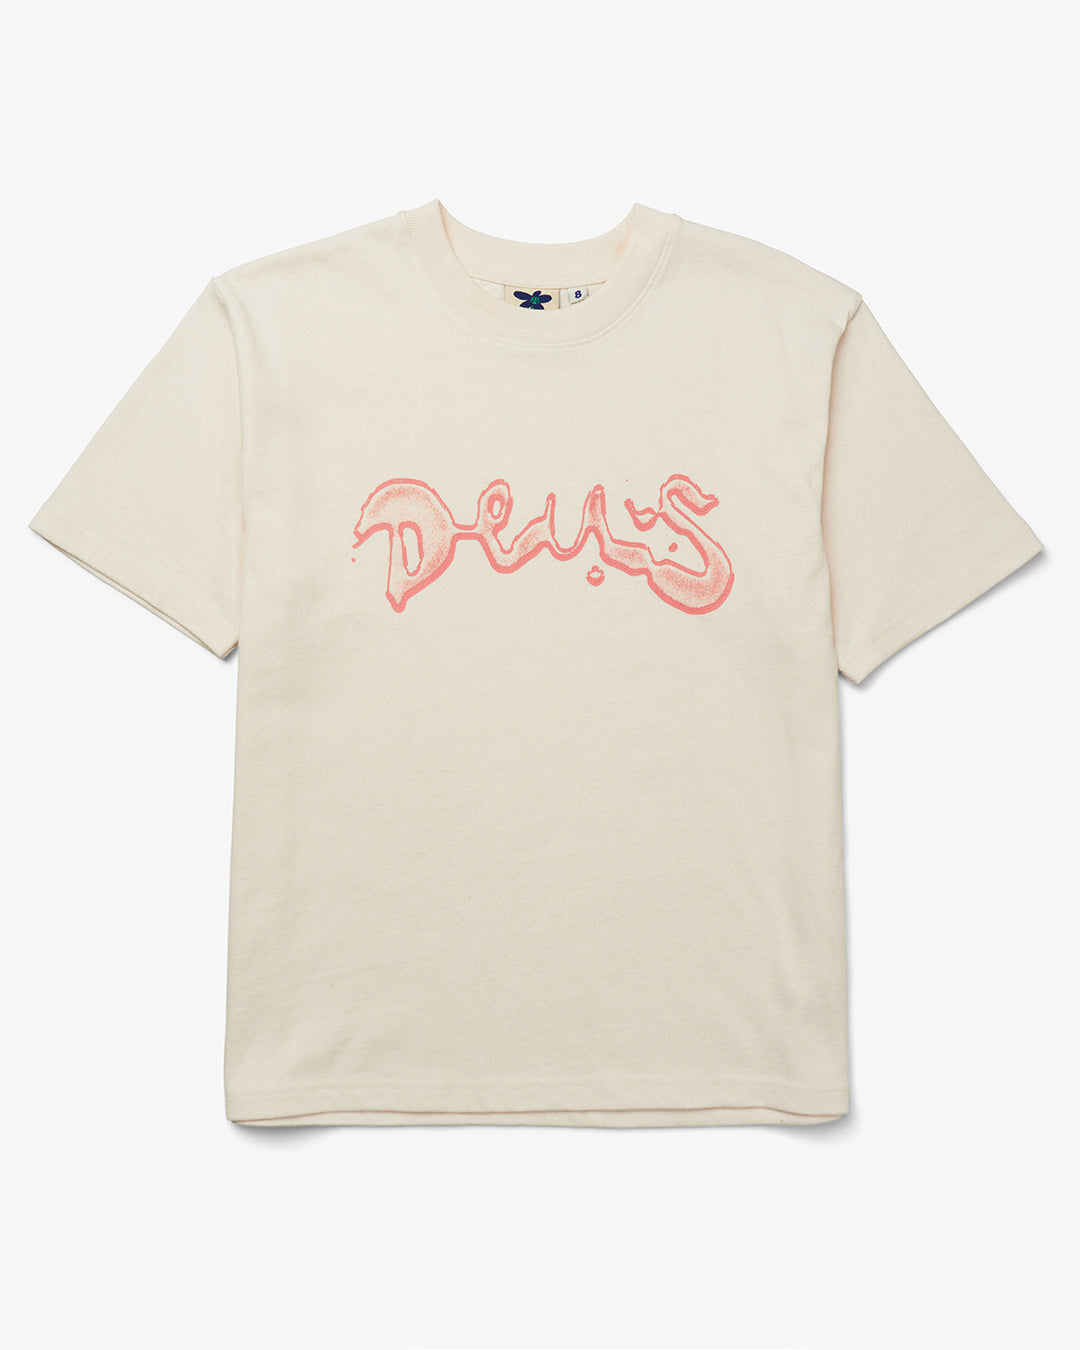 T-shirt Deus Selected